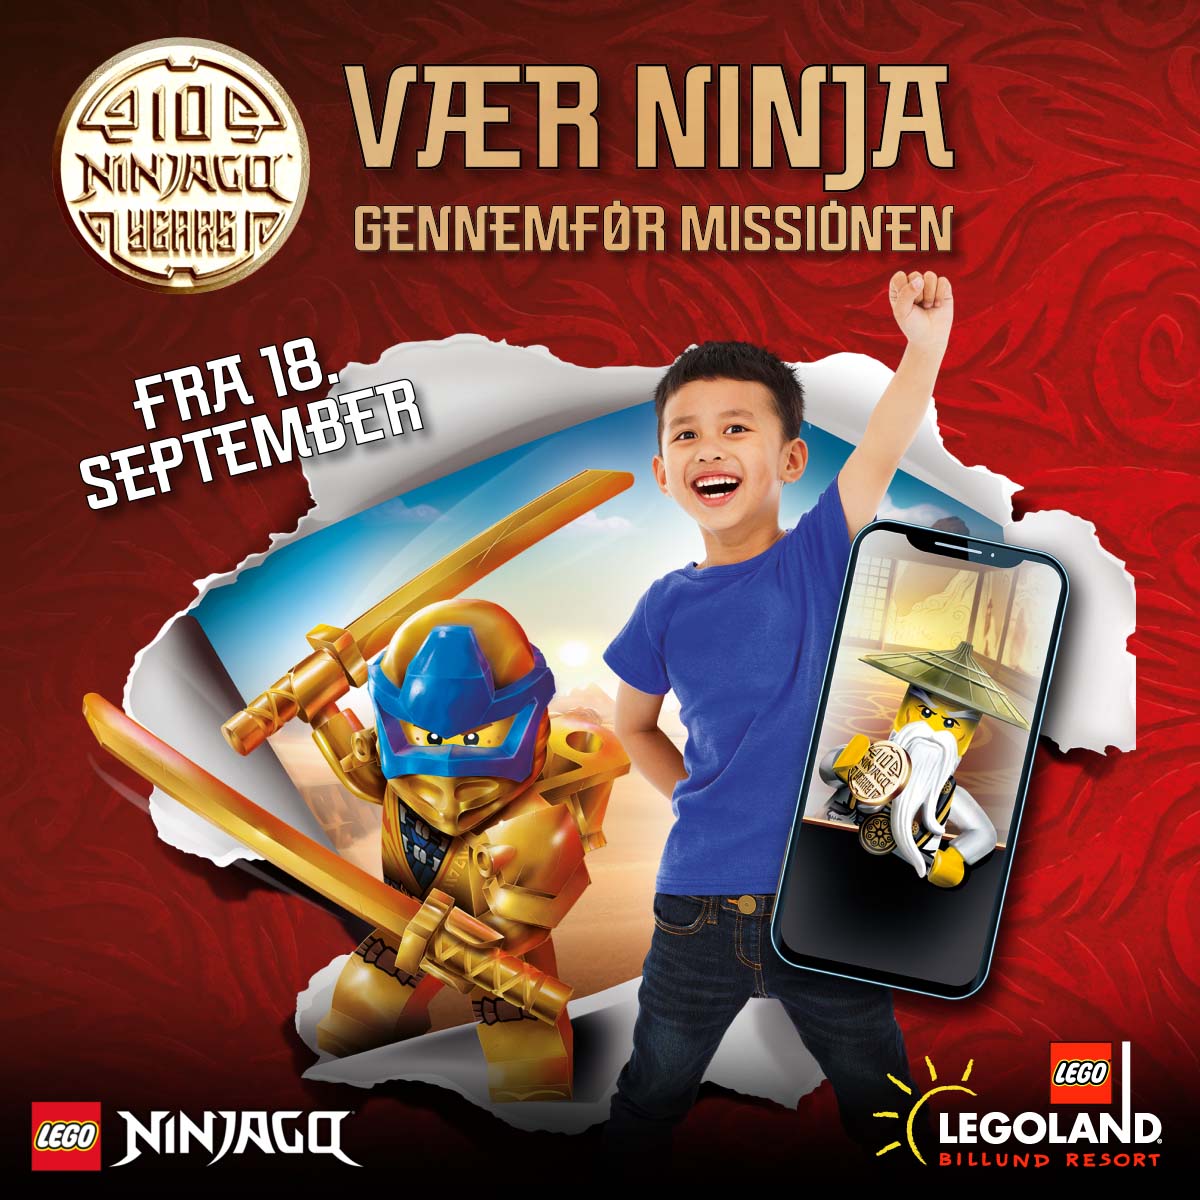 LEGOLAND® fejrer 10 år med LEGO® NINJAGO® med digital AR-mission | Billund